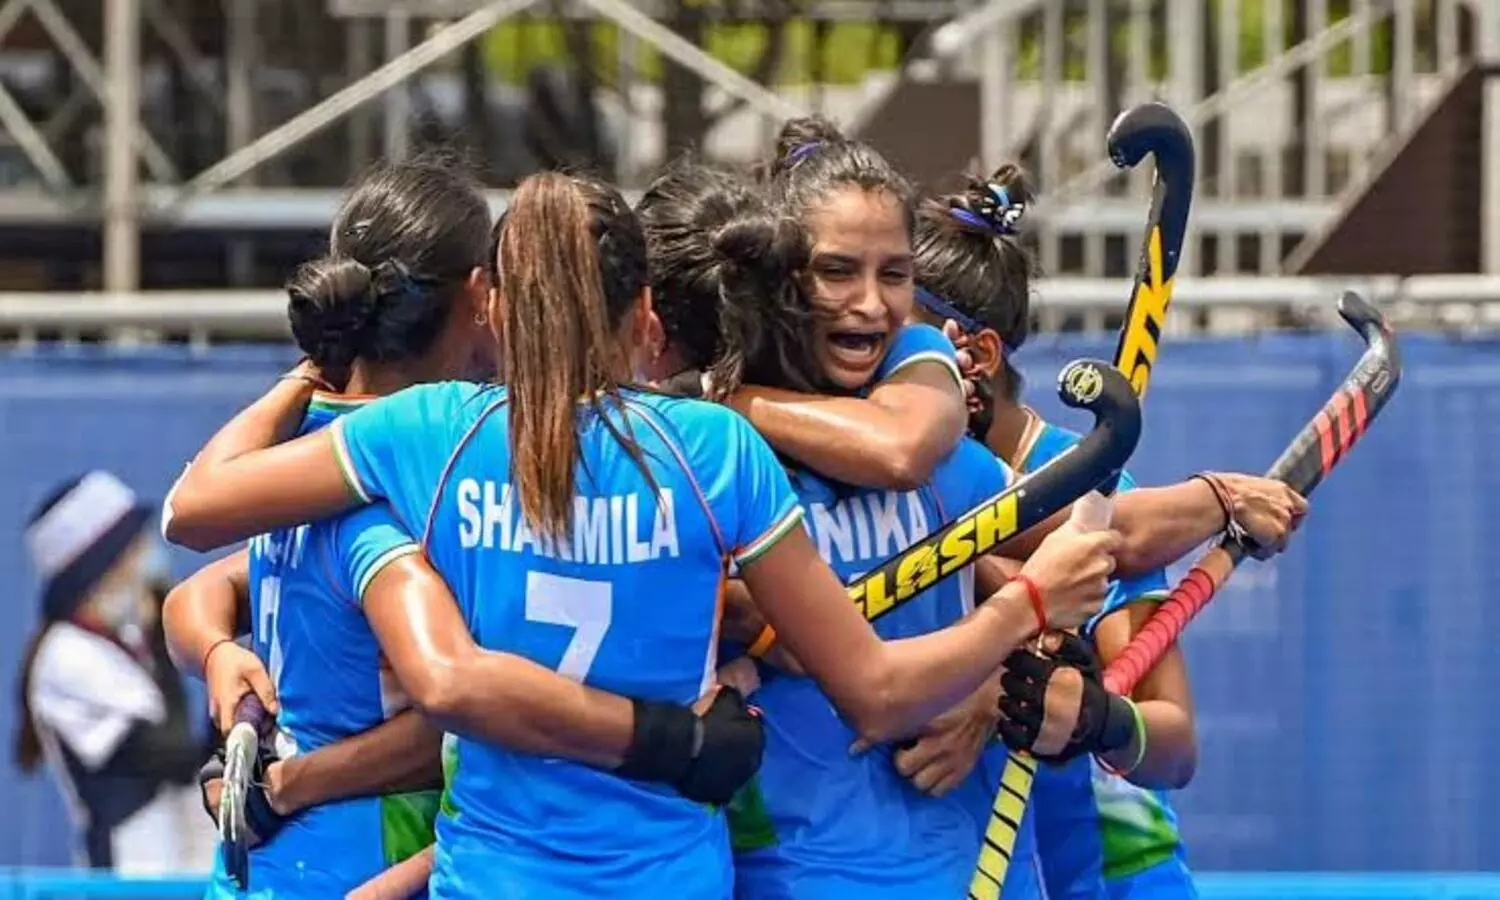 CWG 2022: भारतीय महिला हॉकी टीम ने सेमीफाइनल में बनाई जगह, ऑस्ट्रेलिया के खिलाफ होगा मुकाबला